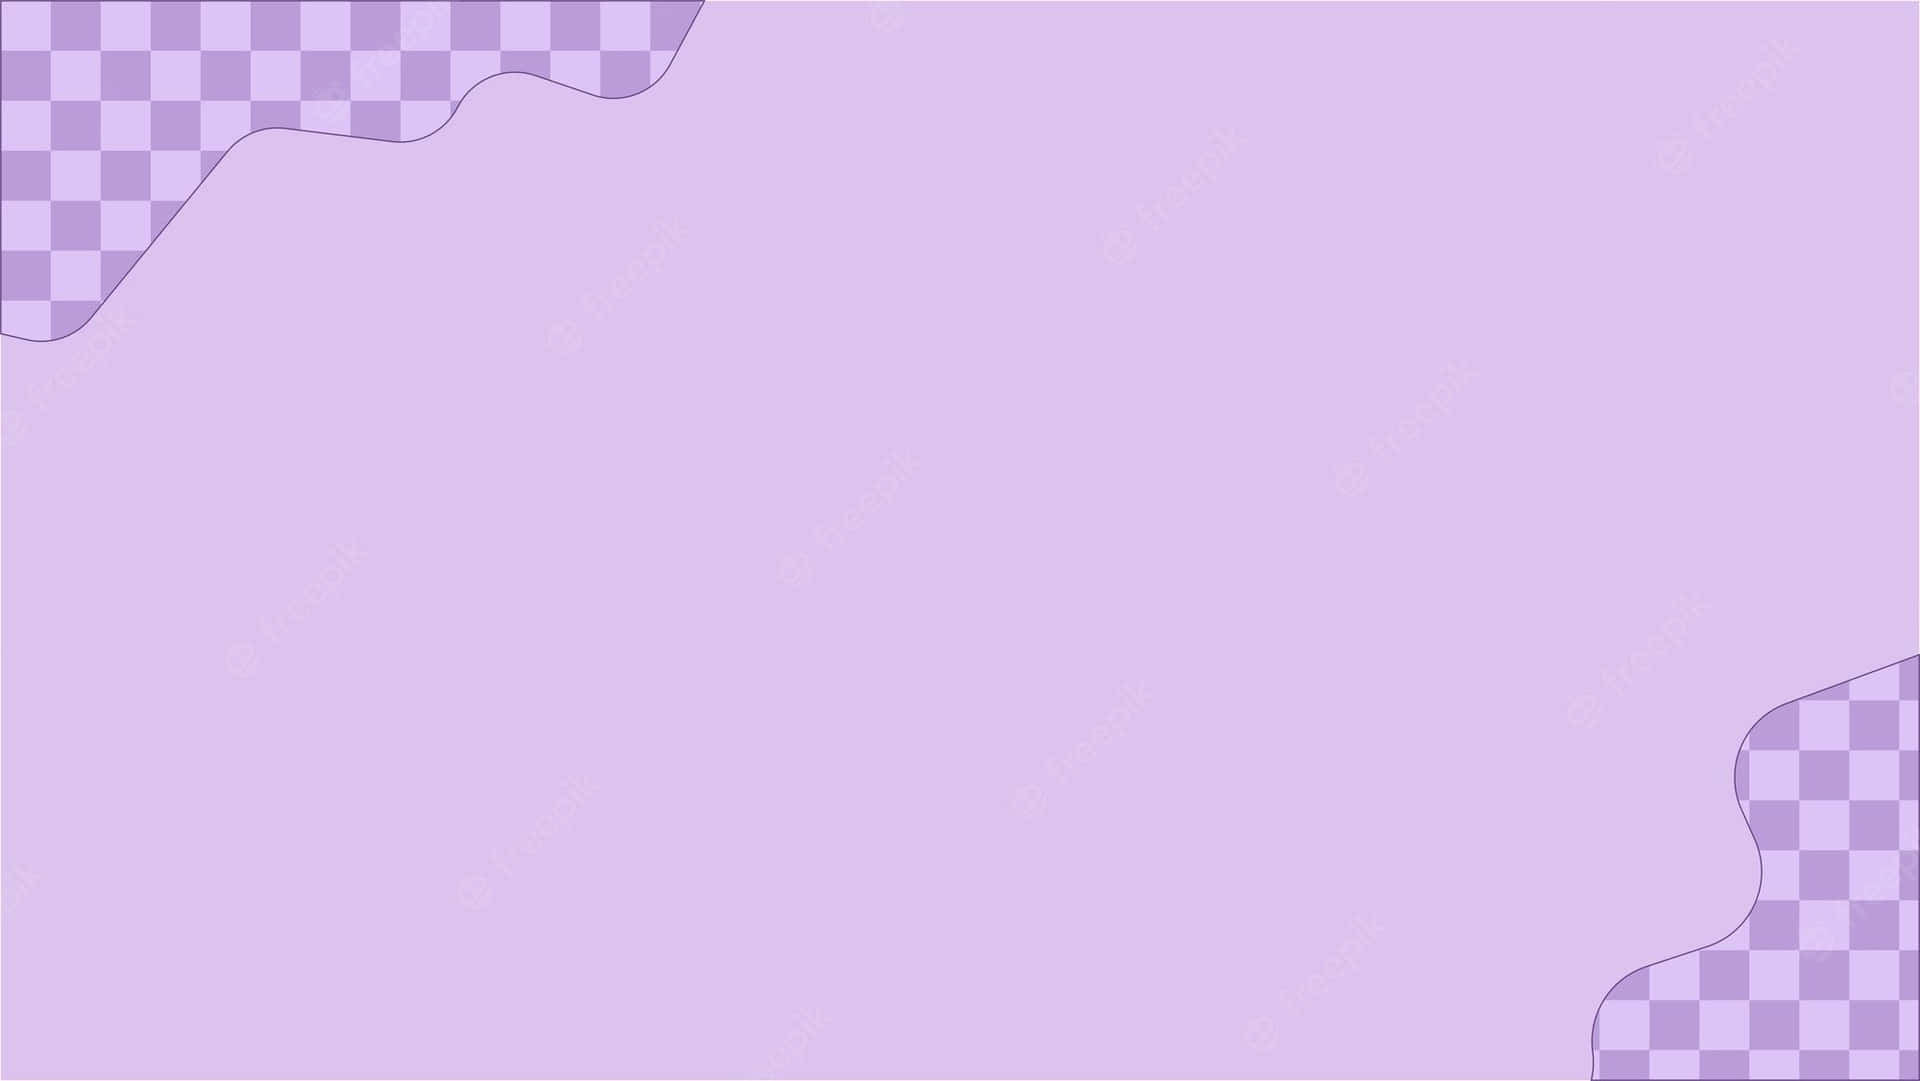 Lavender: Màu tím hương thơm với hương thơm dễ chịu và mát mẻ của hoa oải hương sẽ khiến bạn cảm thấy thư giãn và thăng hoa. Chúng tôi mời bạn thưởng thức bức ảnh tuyệt đẹp với gam màu lavender này.